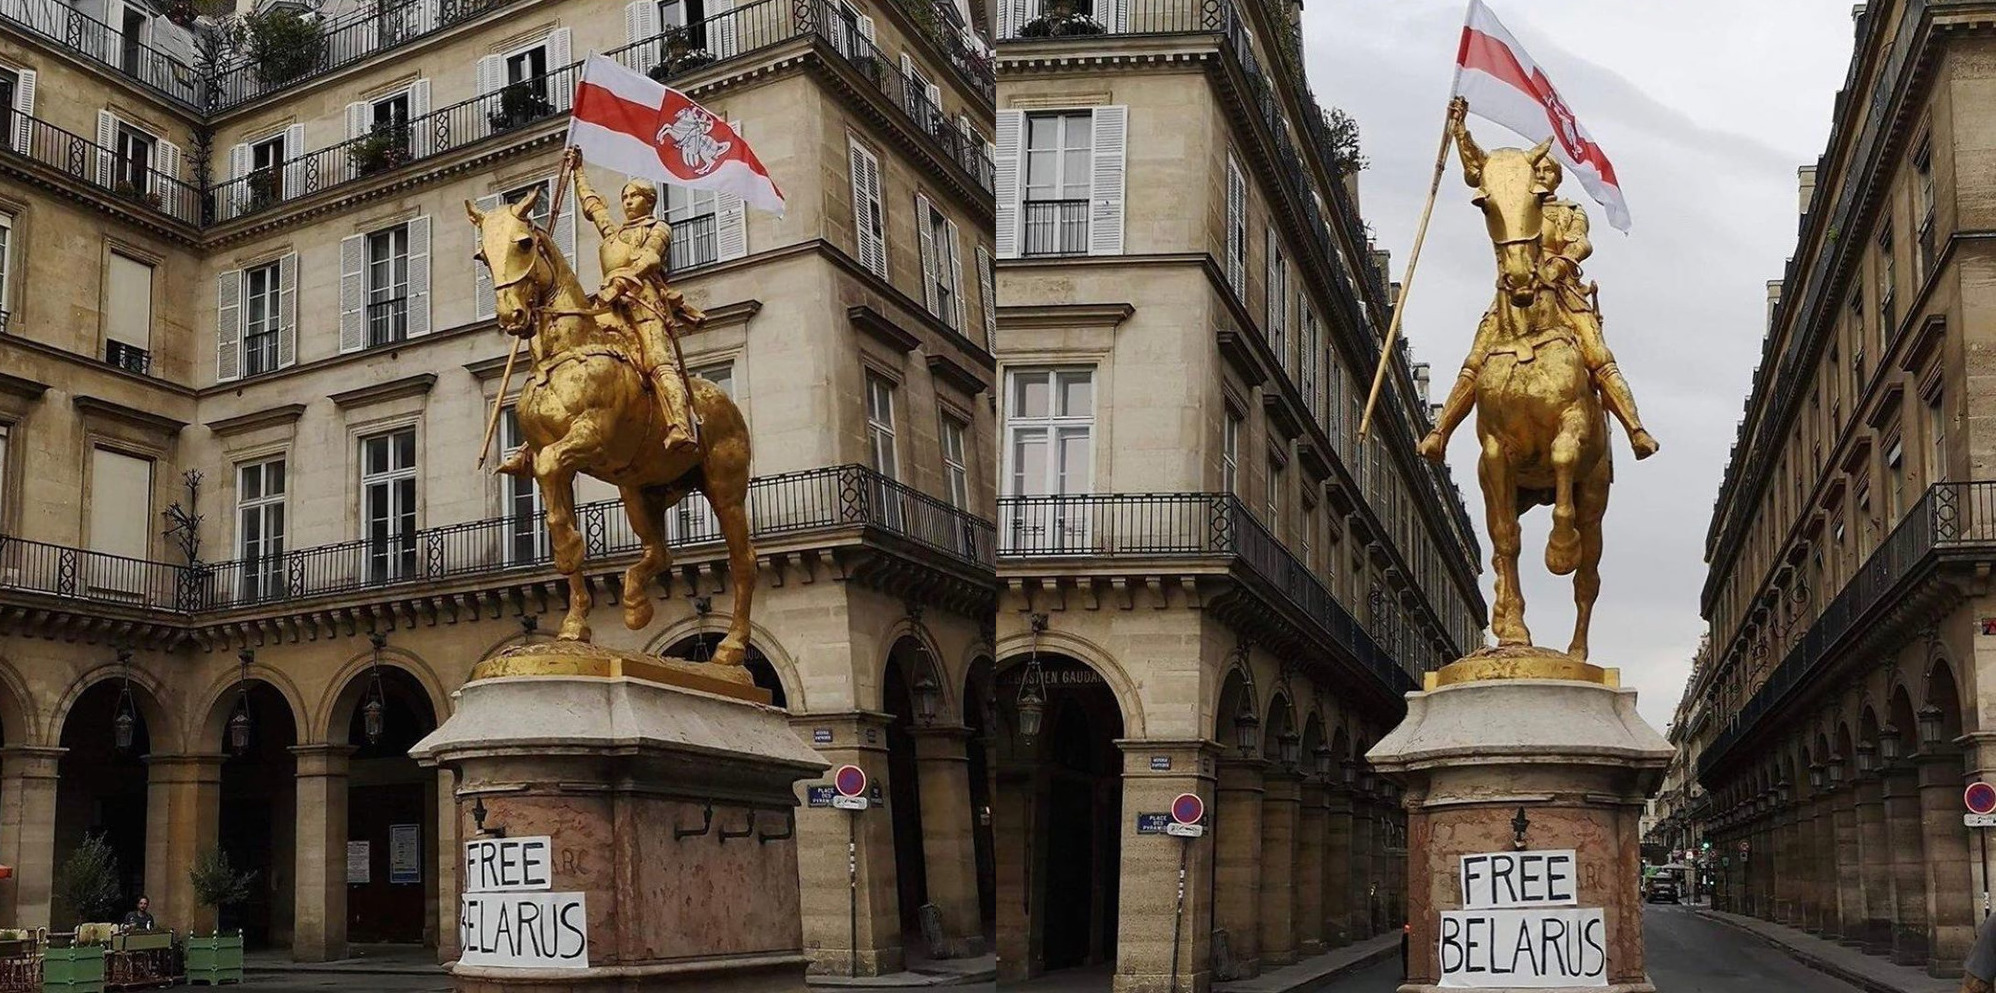 На статуе Жанны д’Арк в Париже вывесили плакат Free Belarus